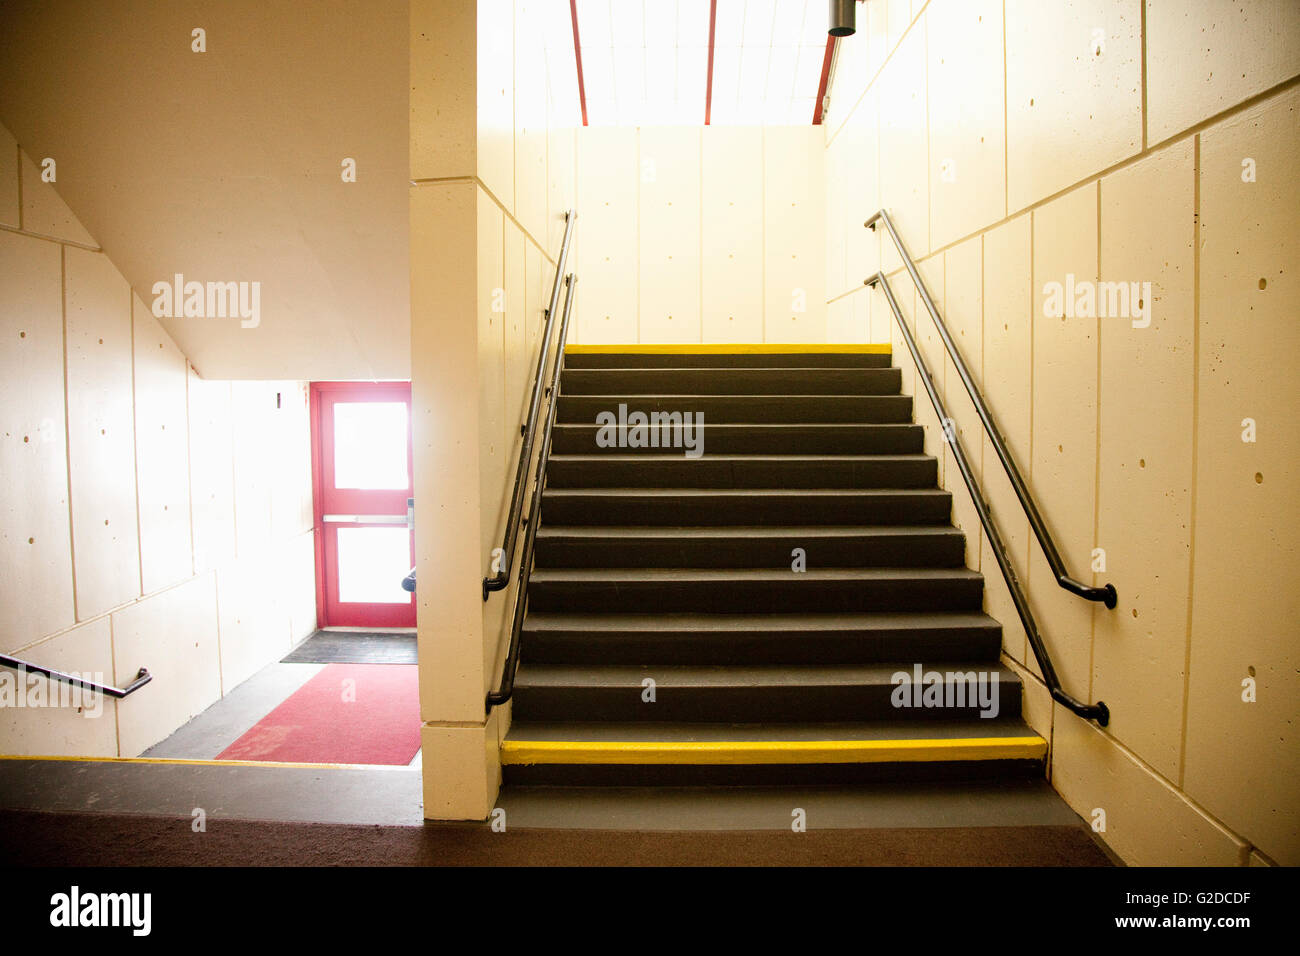 school stairwell